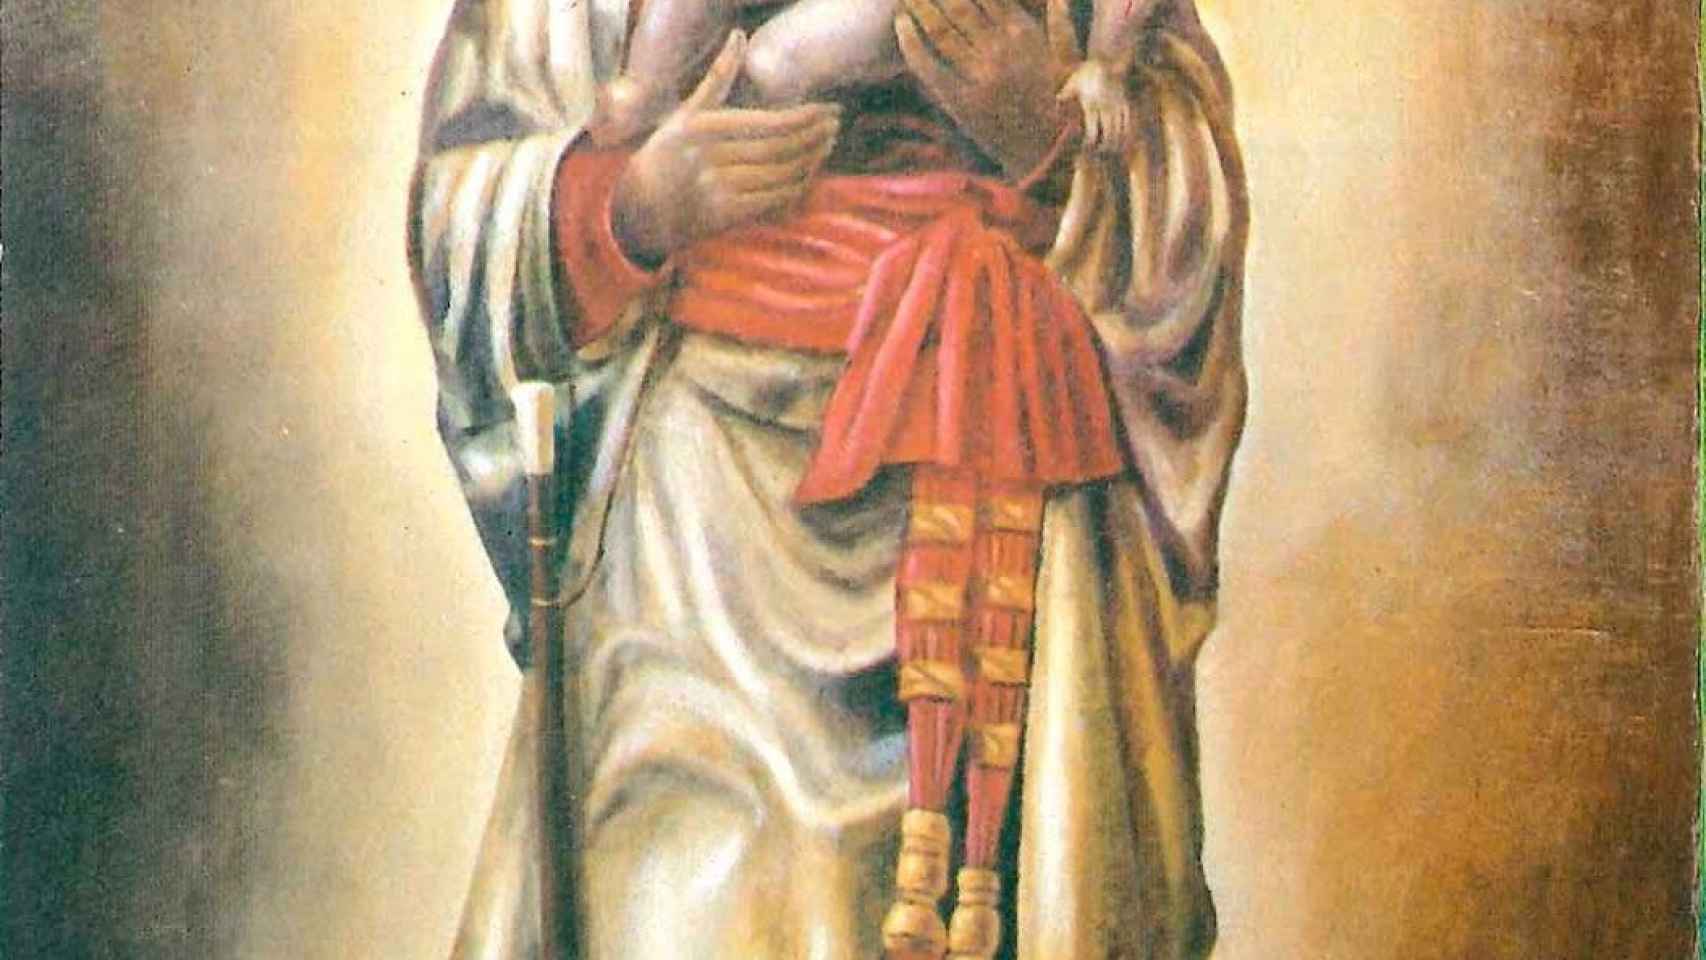 Nuestra Señora de la Almudena